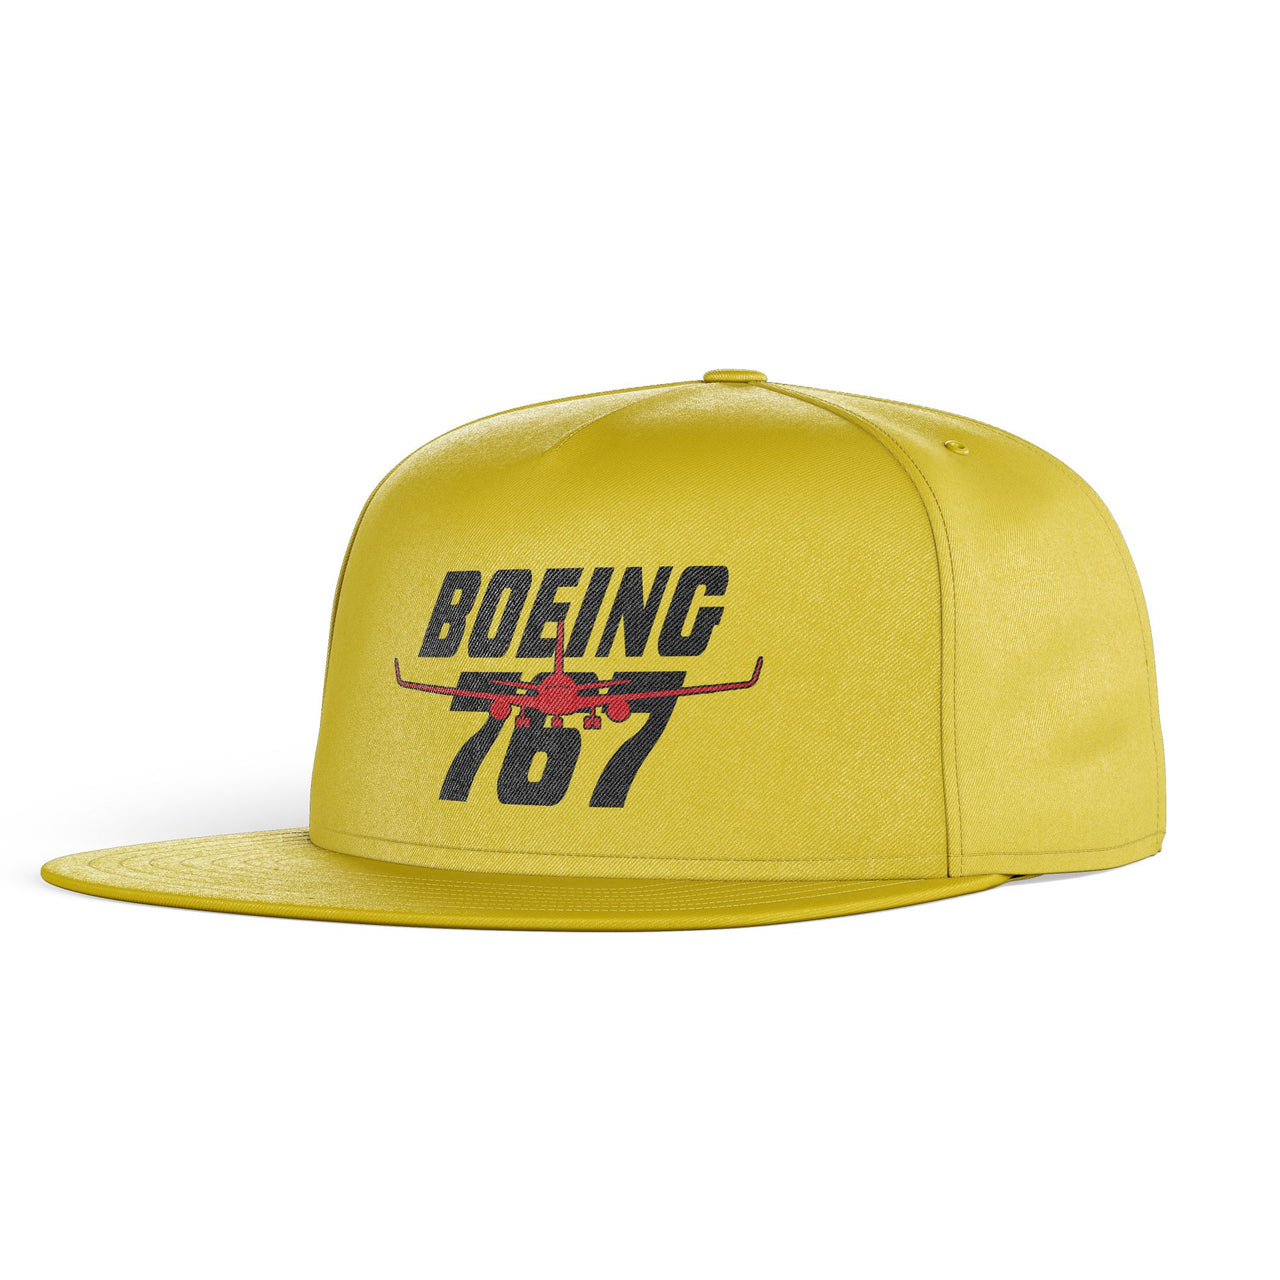 Amazing Boeing 767 Designed Snapback Caps & Hats